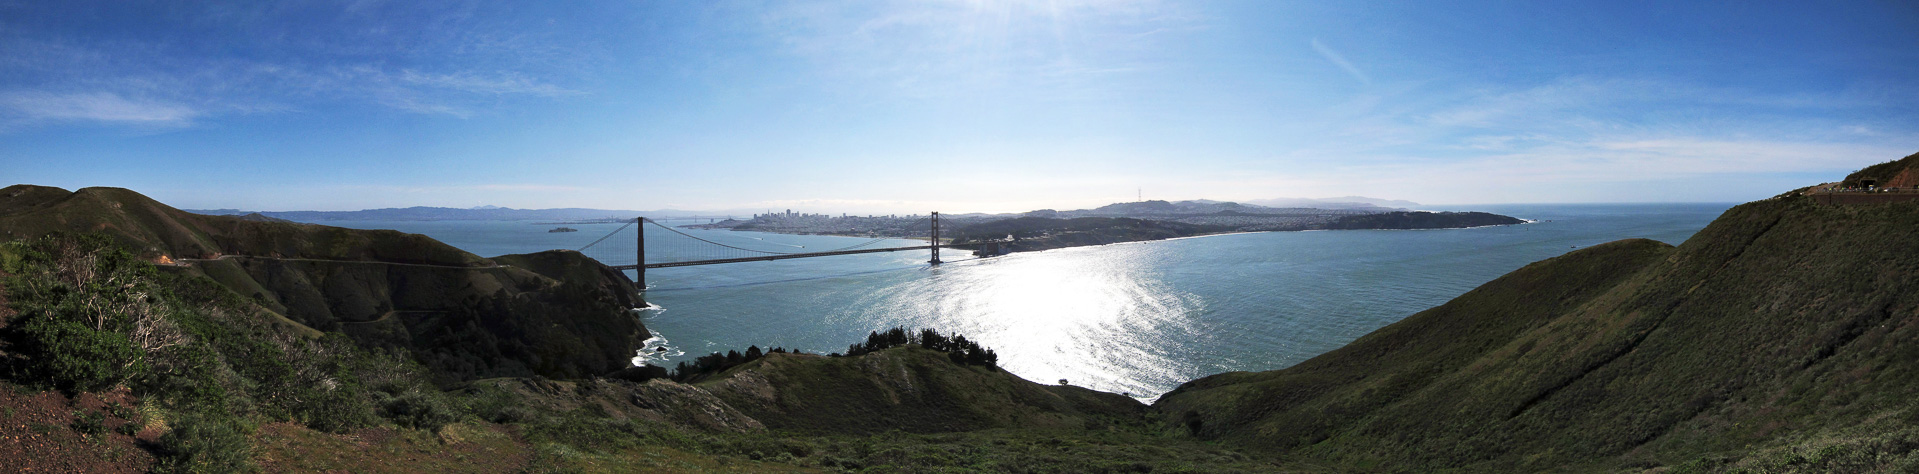 Golden Gate Bridge von Norden aus gesehen.